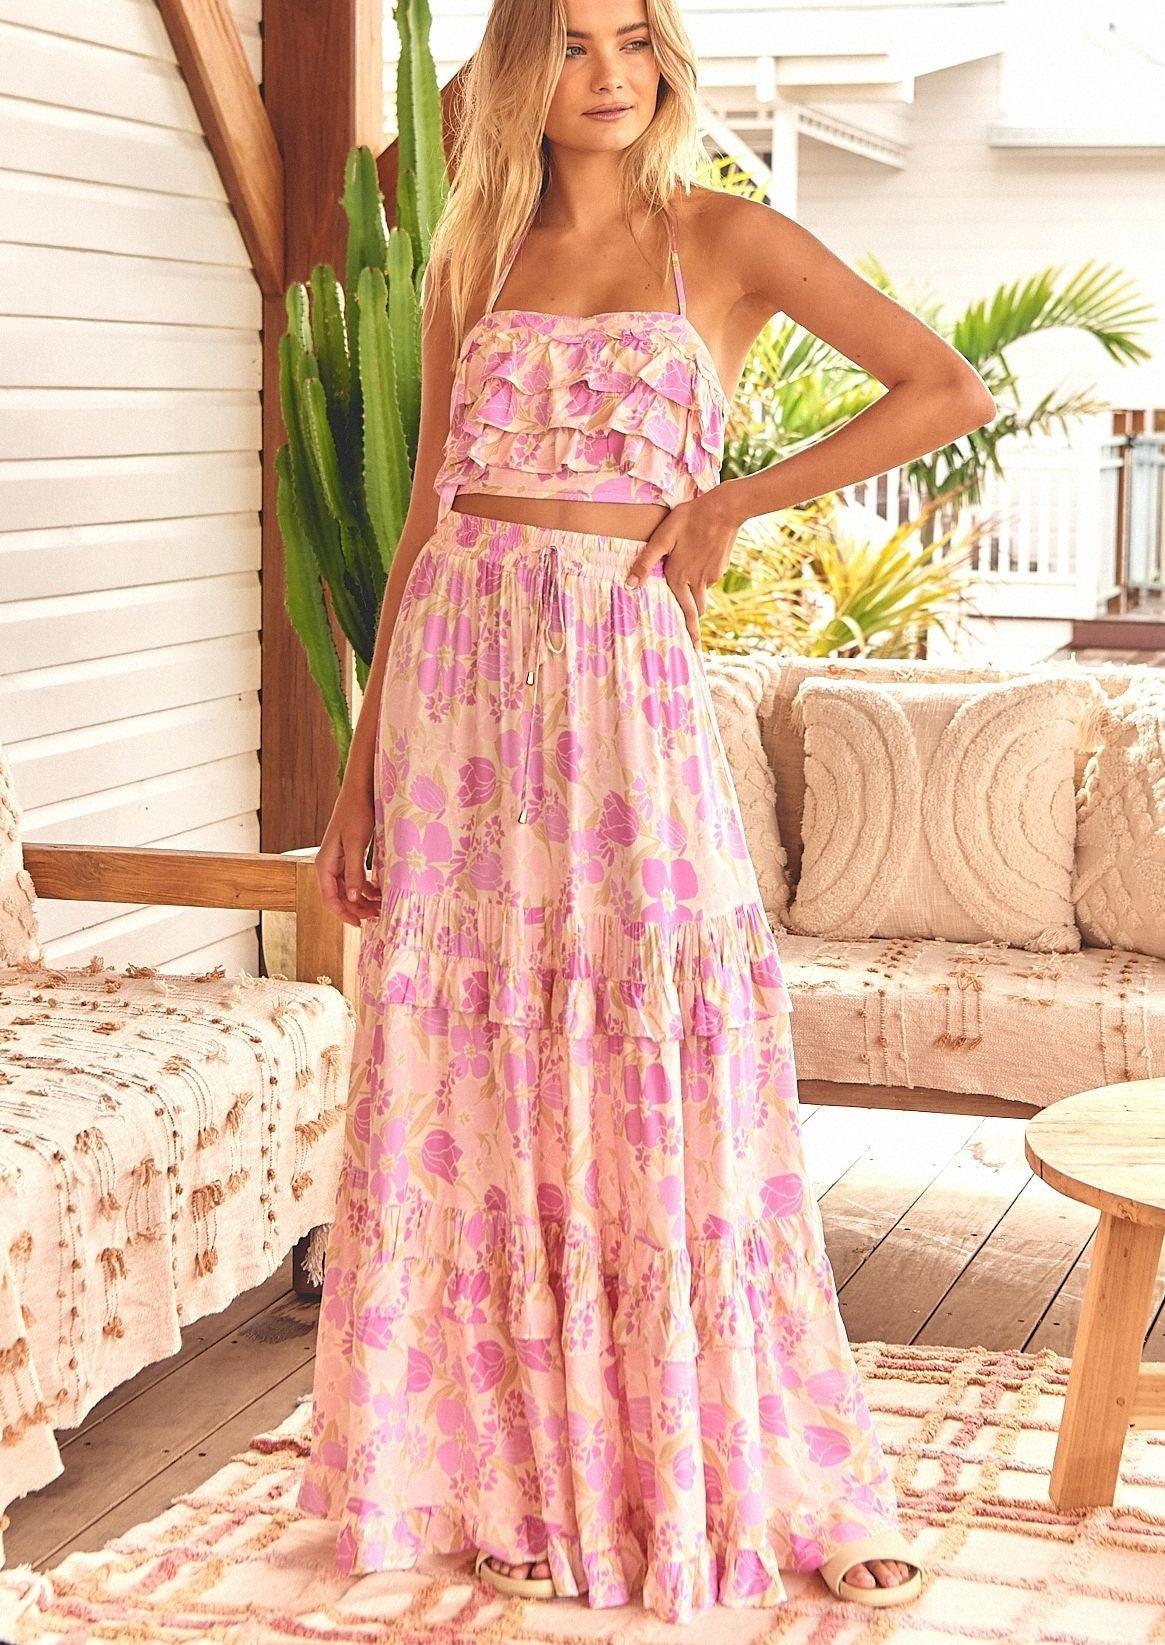 JAASE - Rose Petal Print Top and Maxi Skirt Set - OutDazl